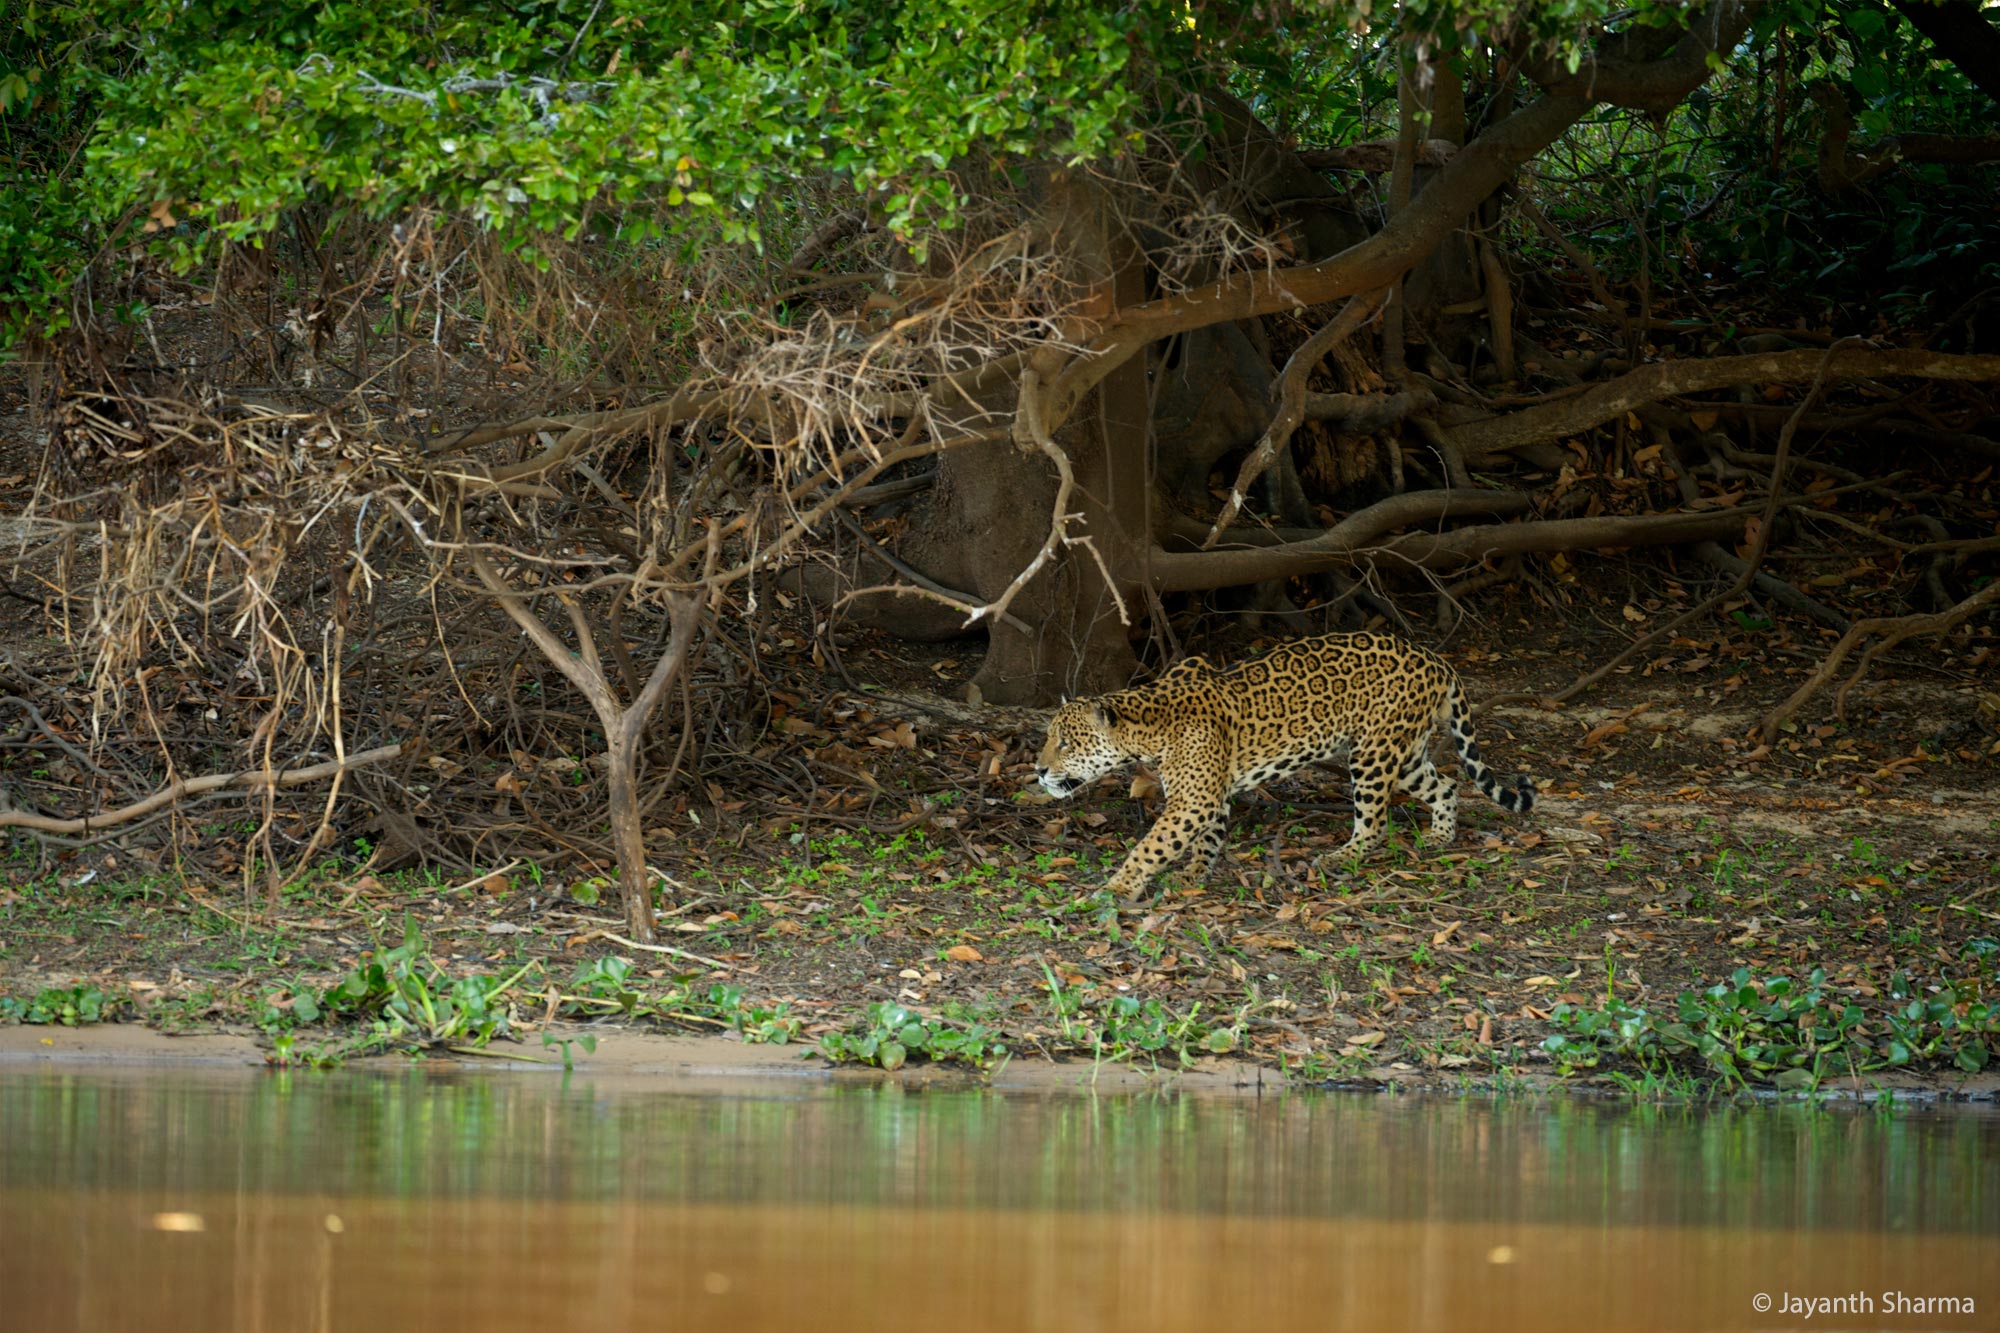 Jaguar stalking in the Pantanal